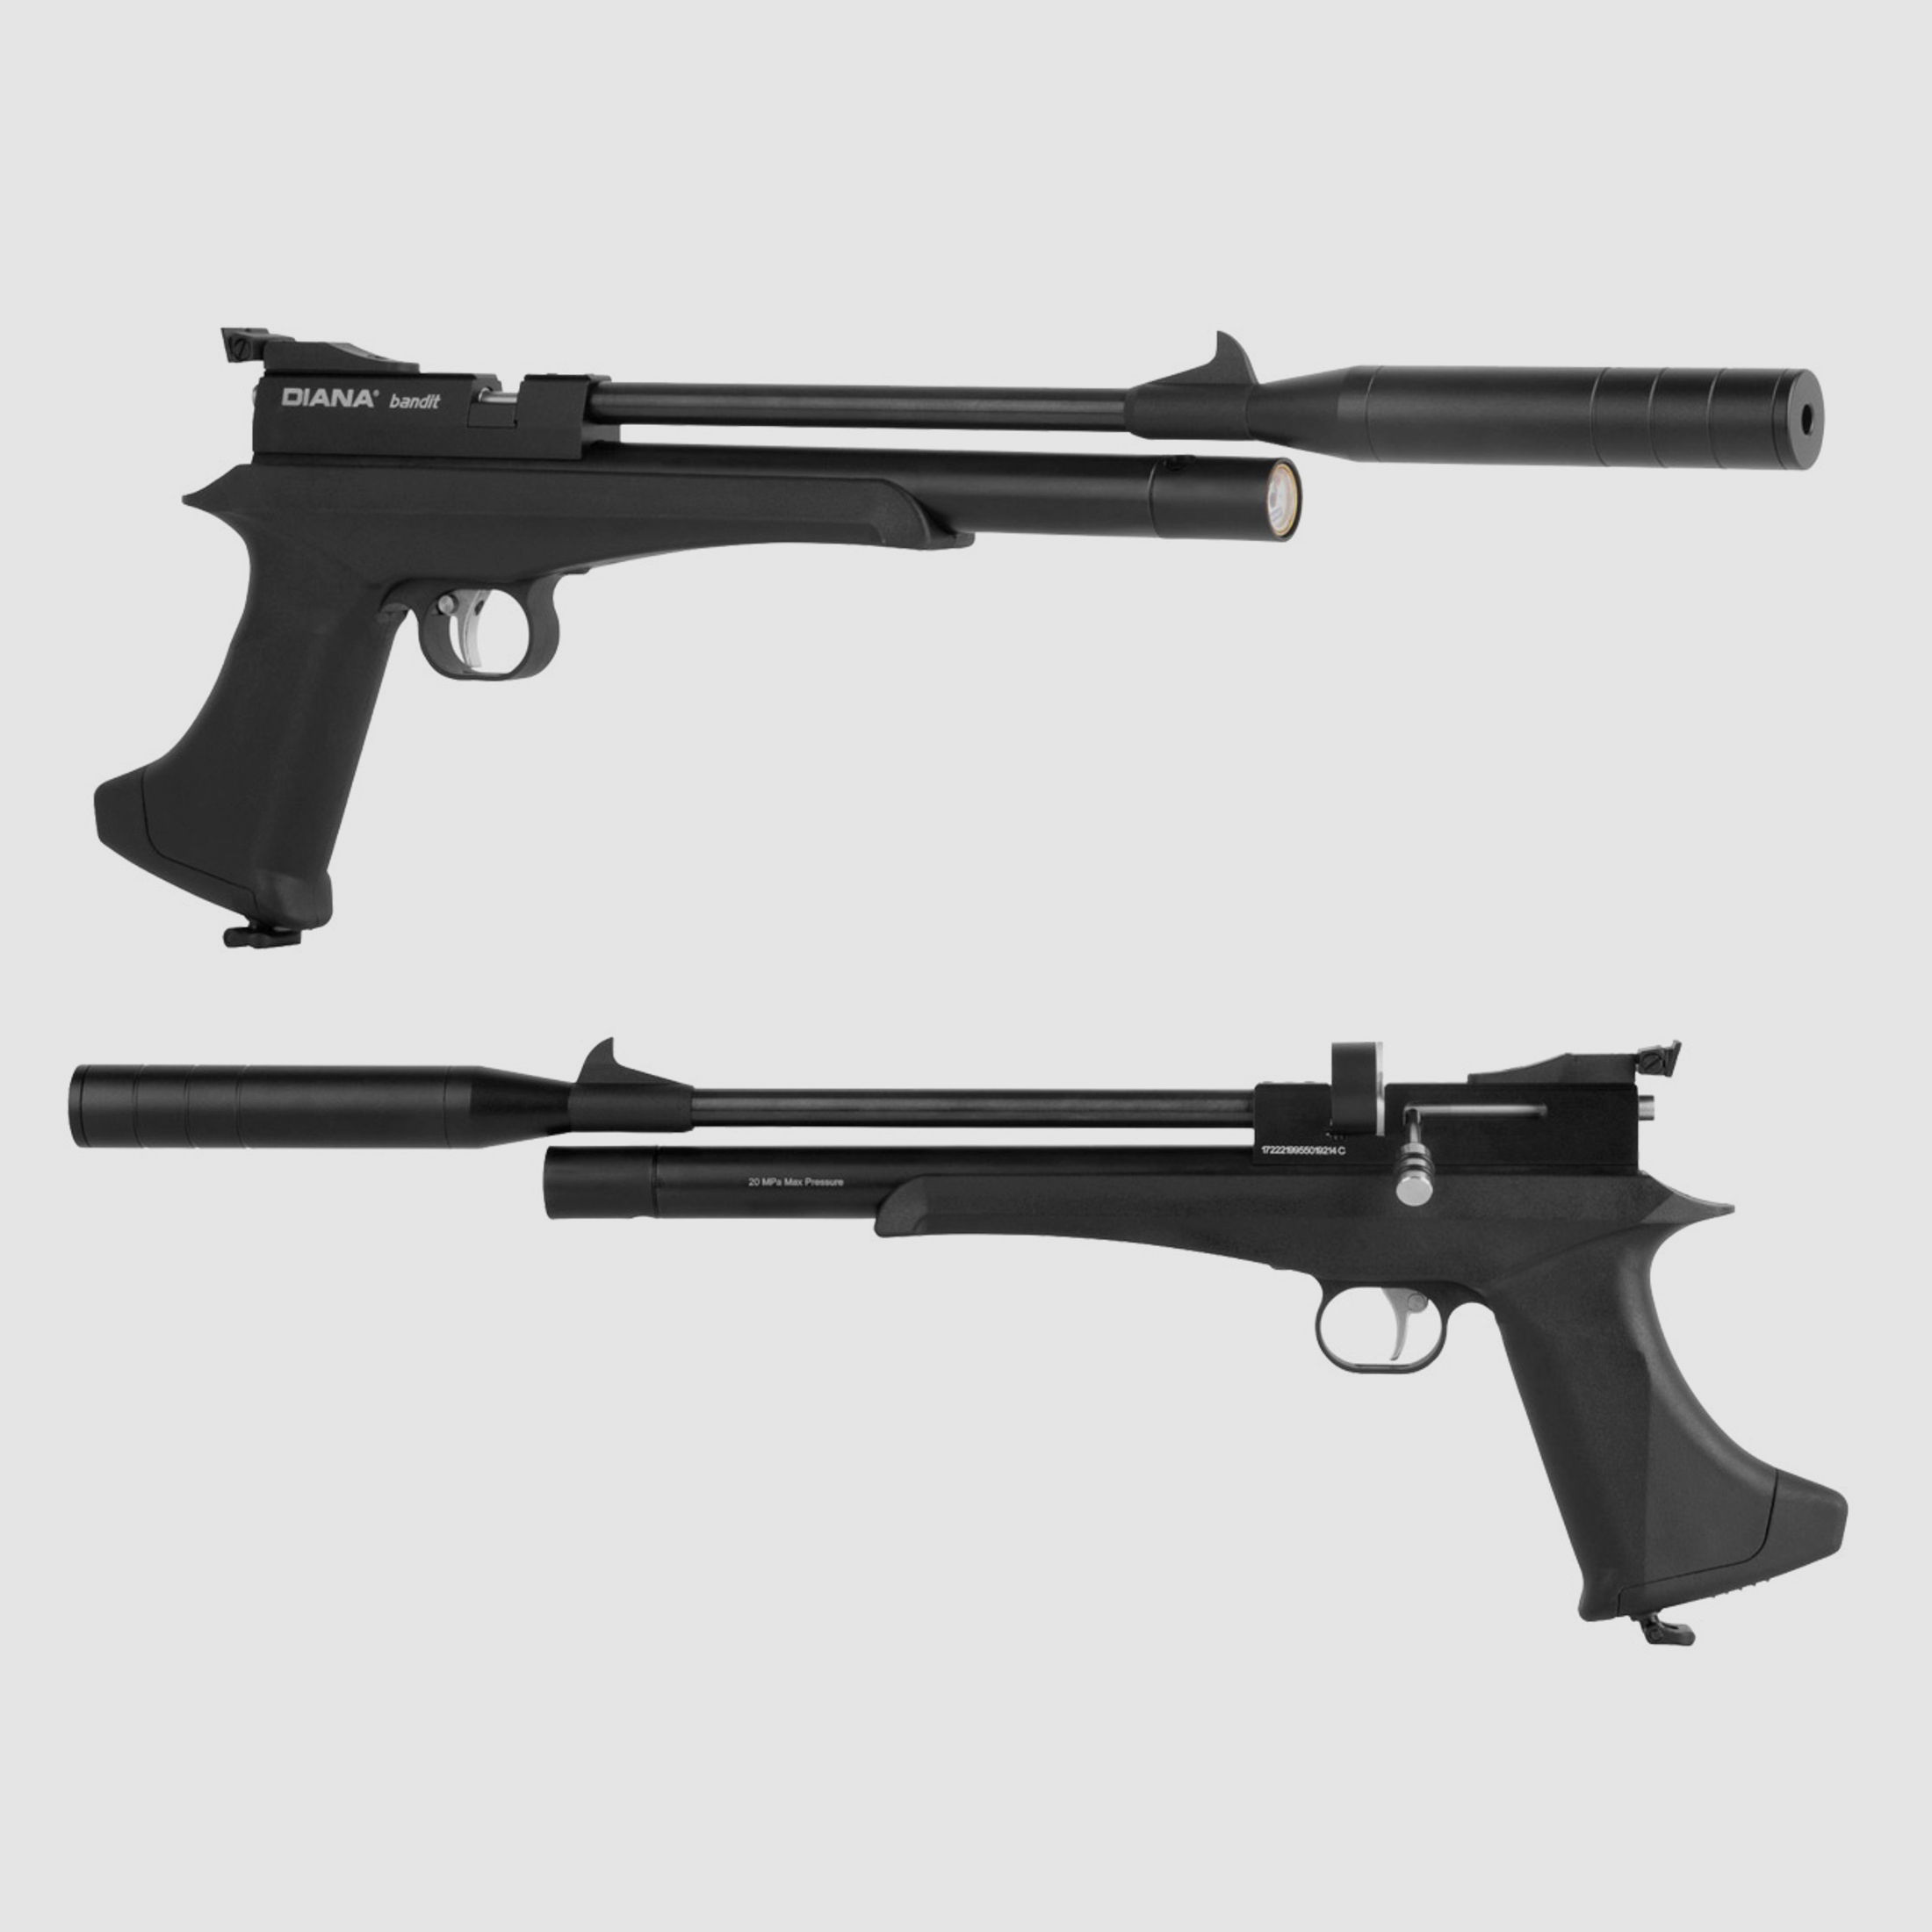 Pressluftpistole Diana bandit black Kunststoffgriff mit Hinterschaft SchalldĂ¤mpfer Kaliber 4,5 mm (P18)